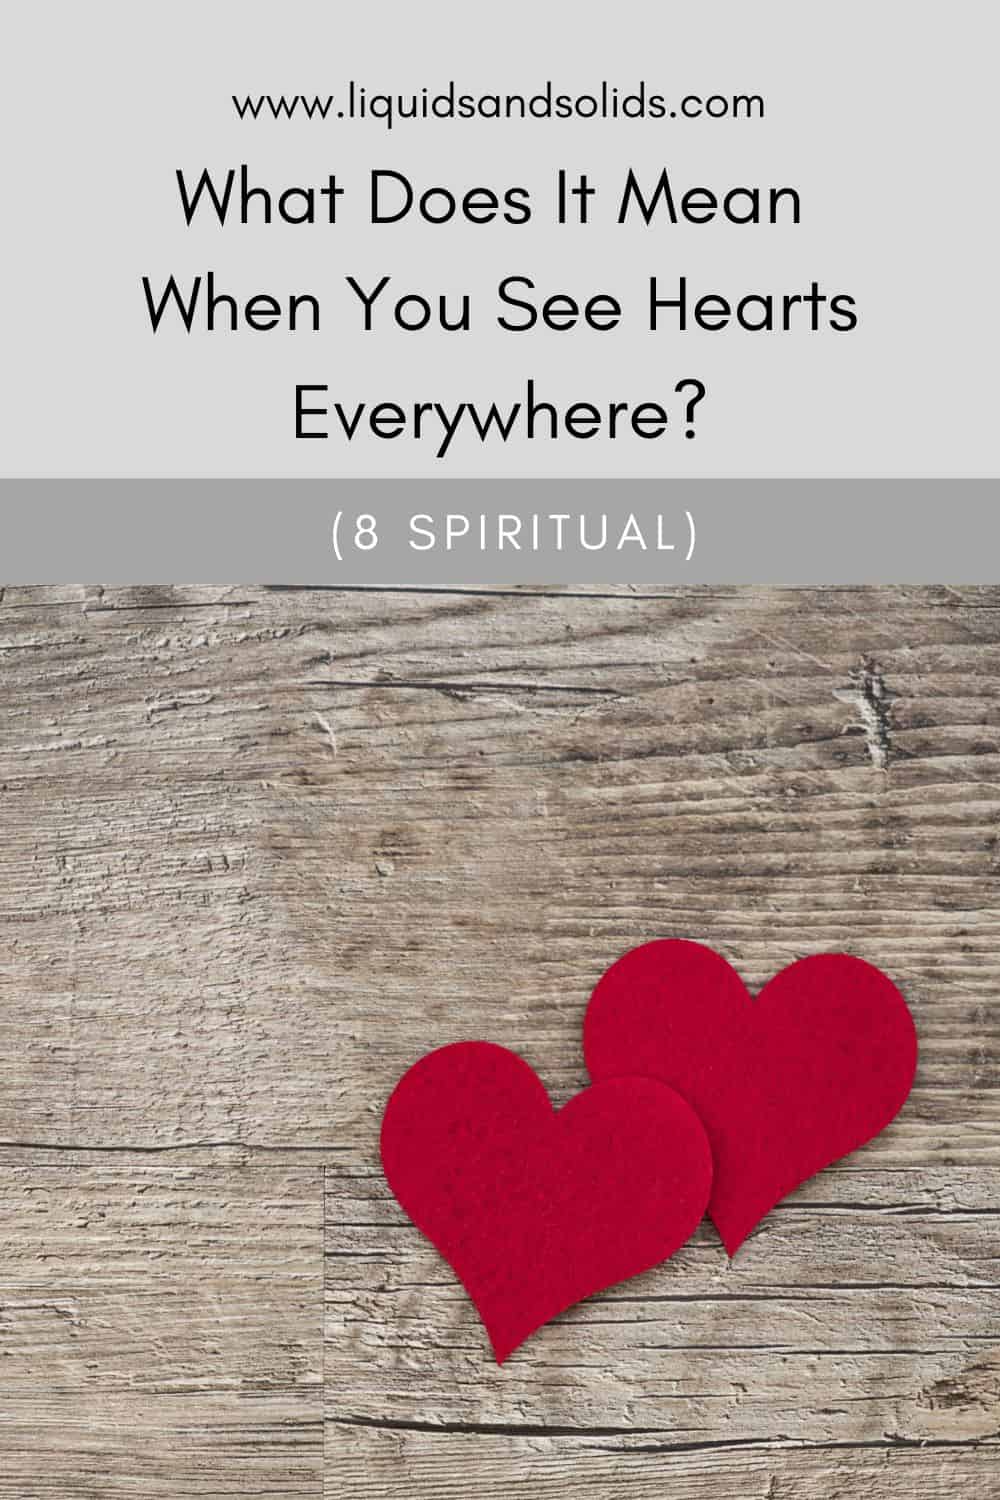  Hvad betyder det, når du ser hjerter overalt? (8 åndelige betydninger)